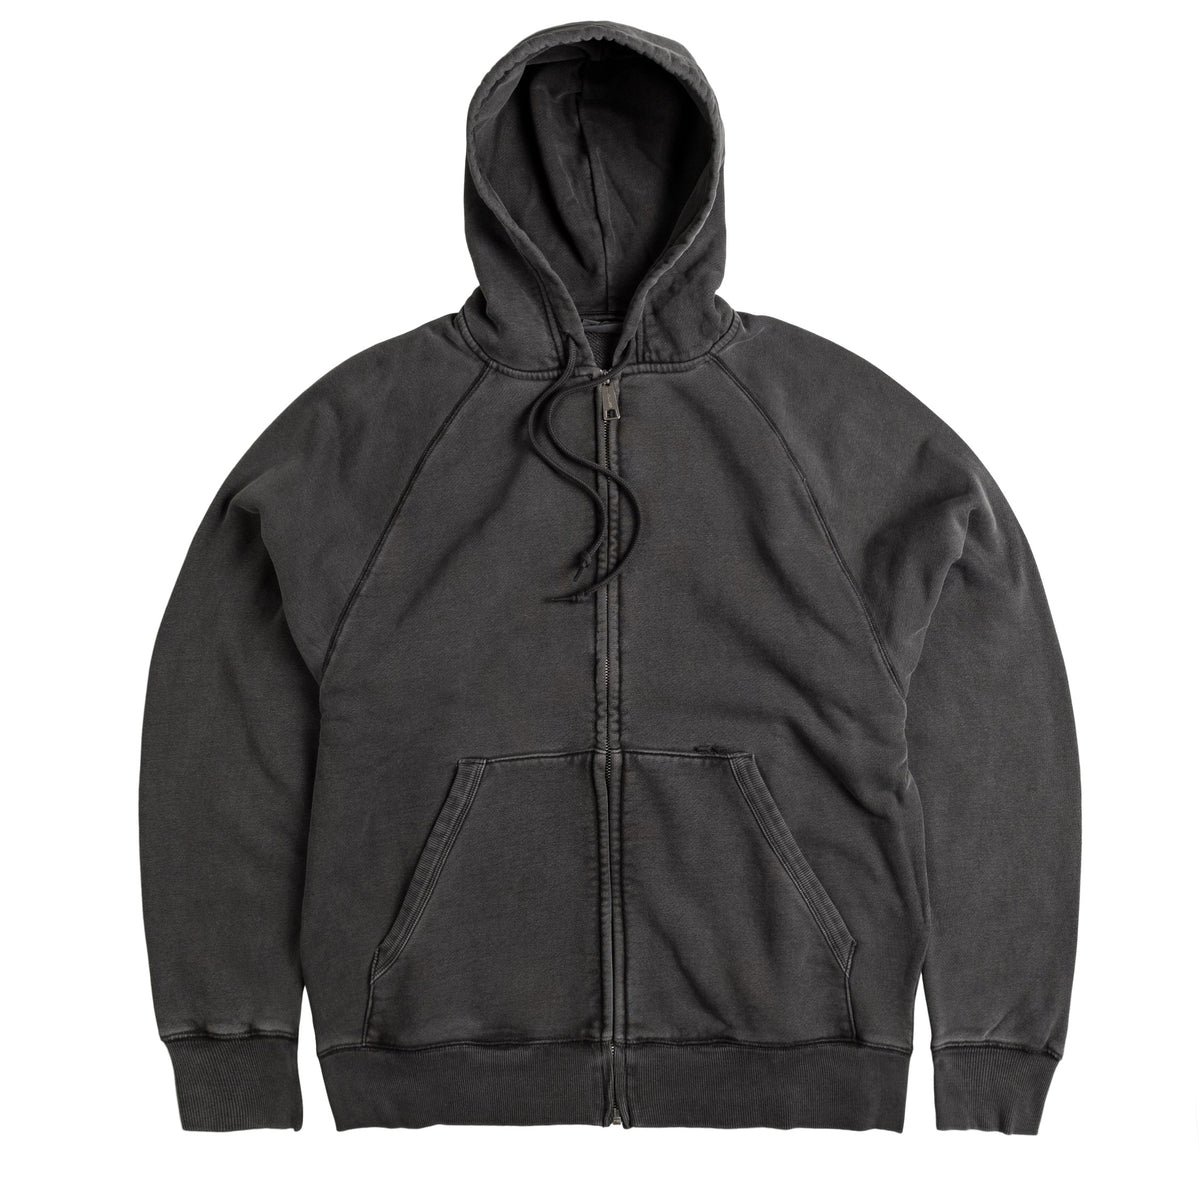 Carhartt WIP Taos Hooded Jacket » Buy online now!